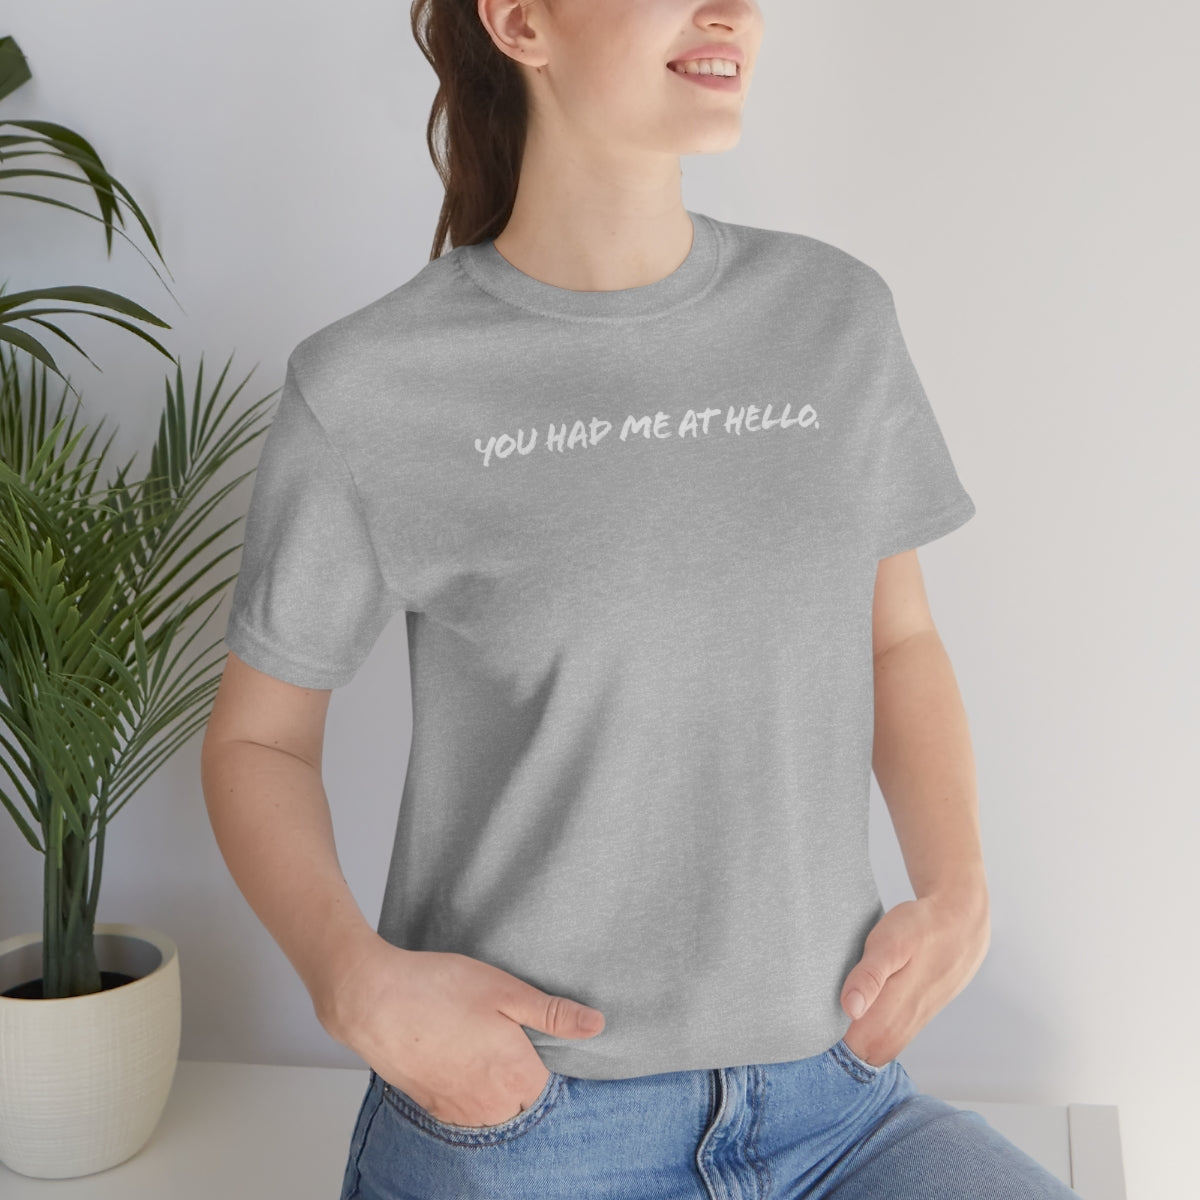 You had me at hello t-shirt